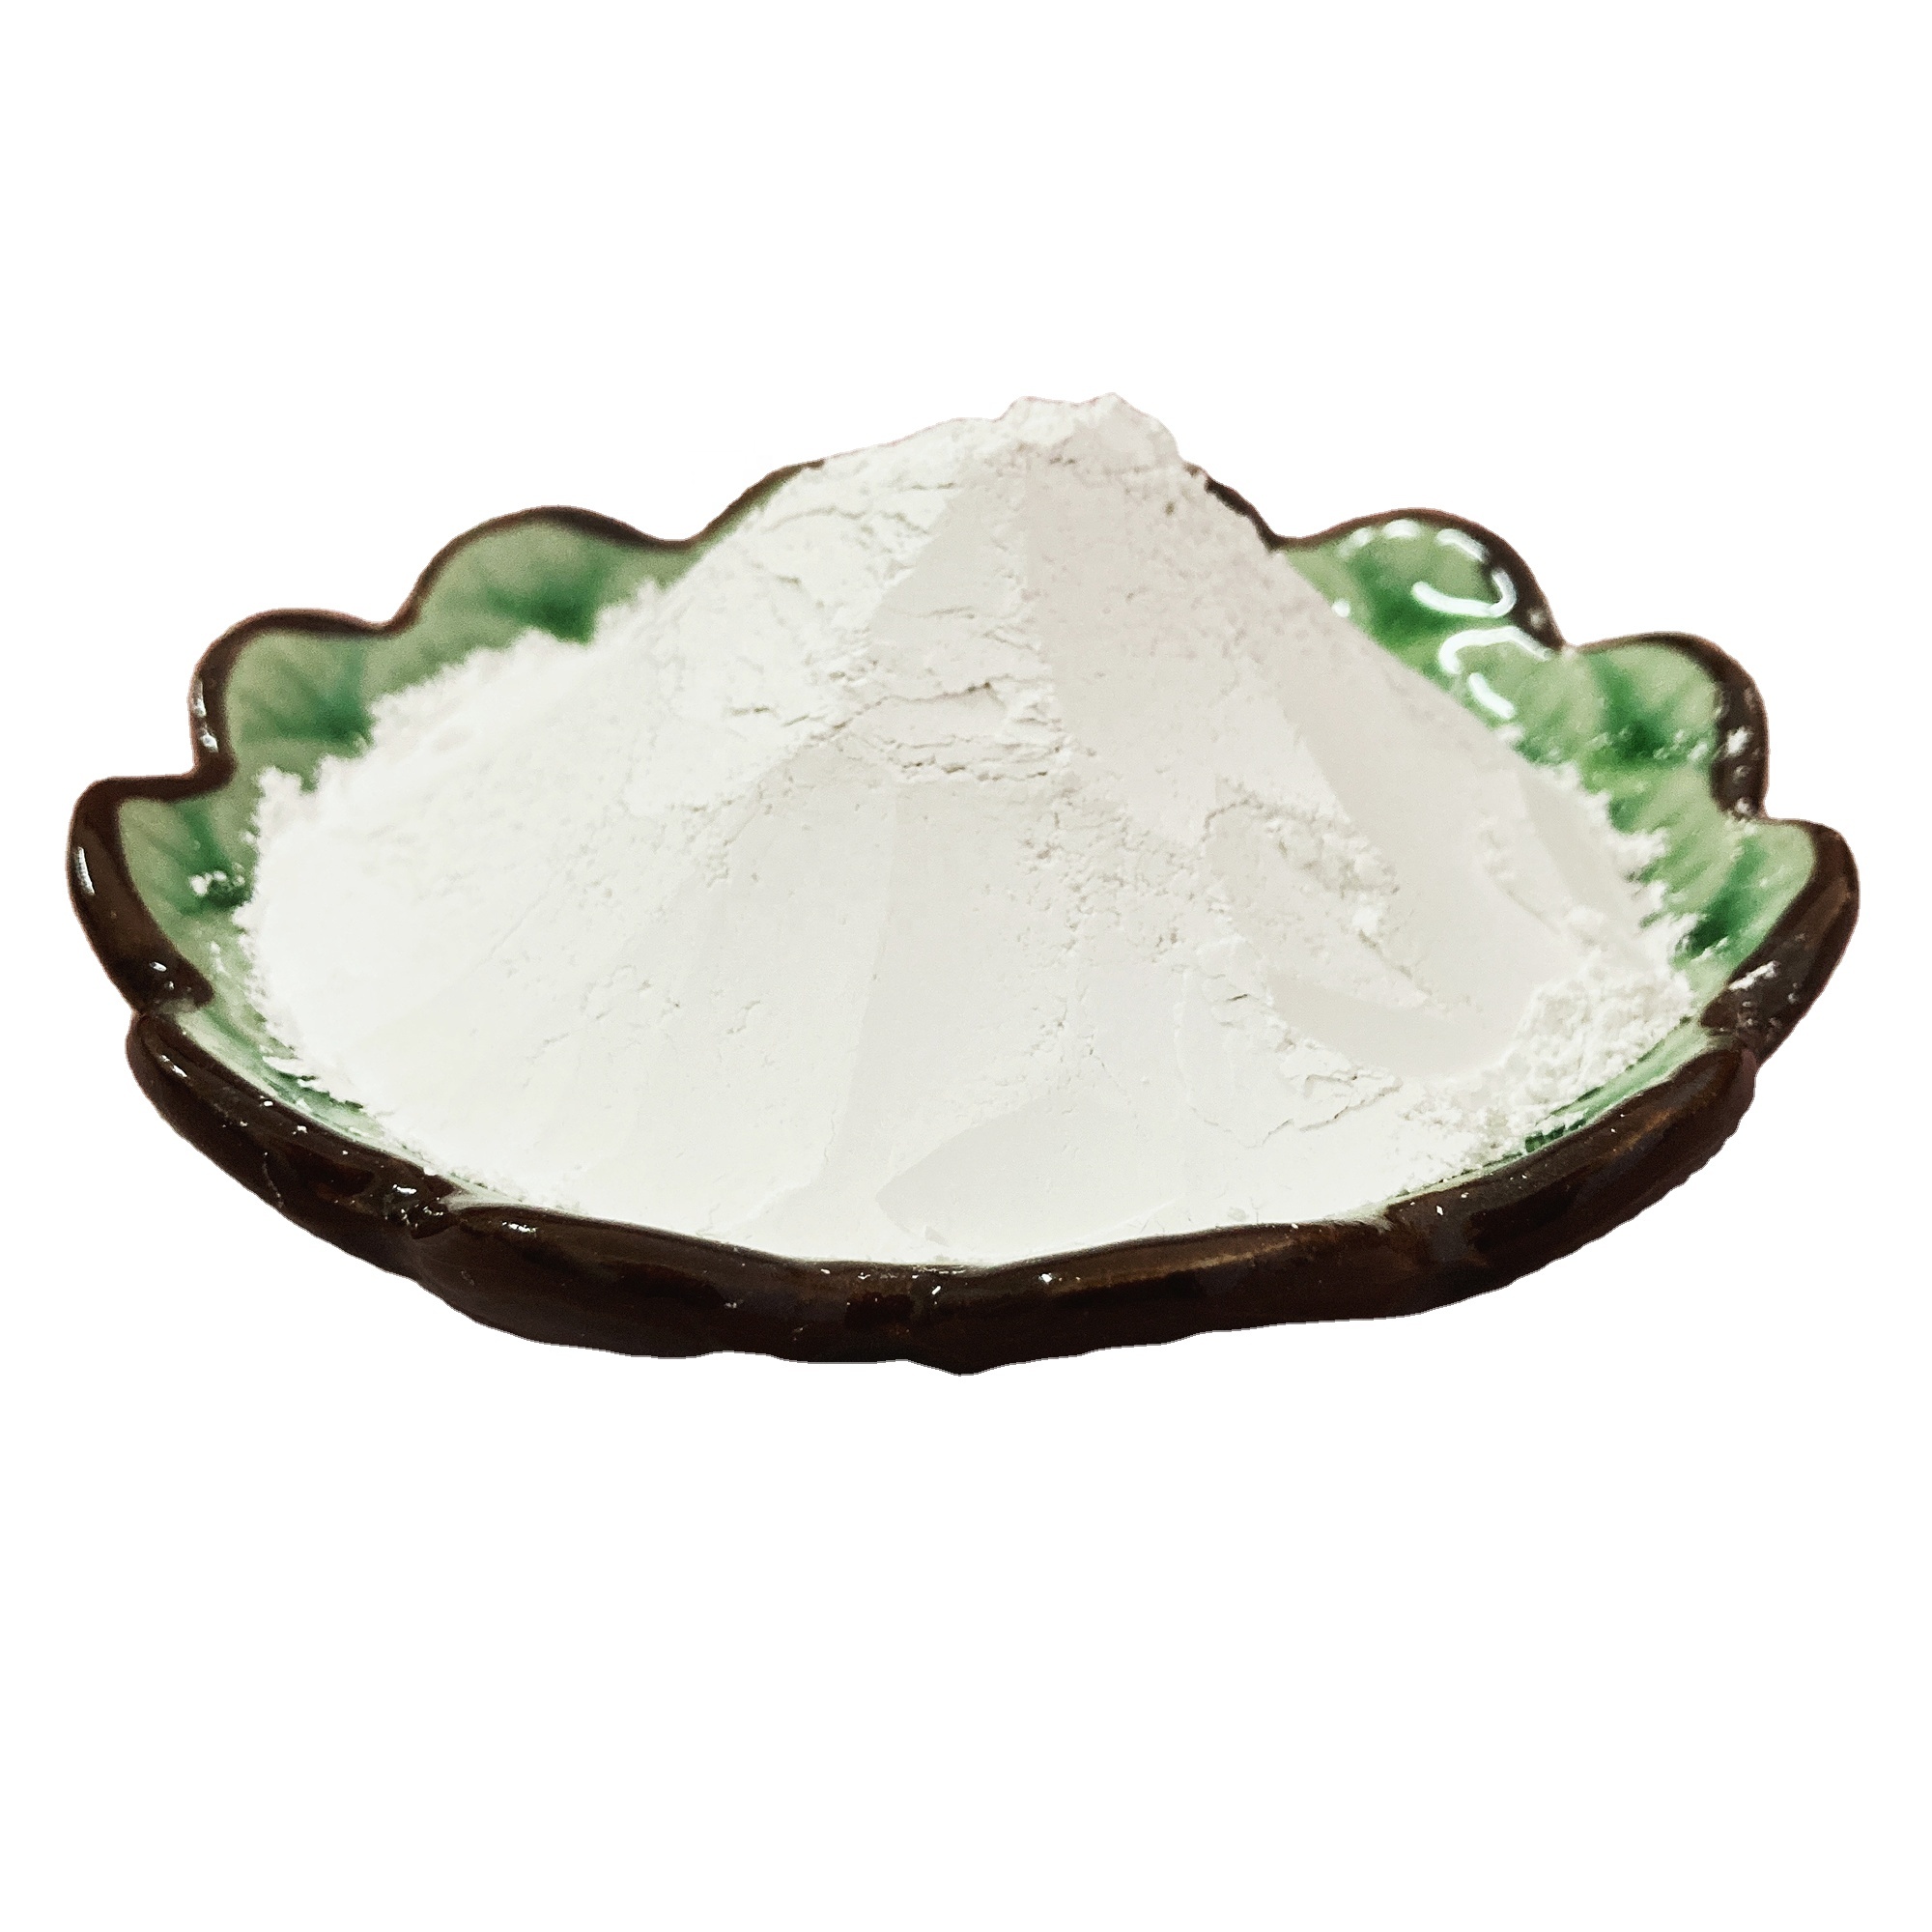 Heavy Calcium Powder